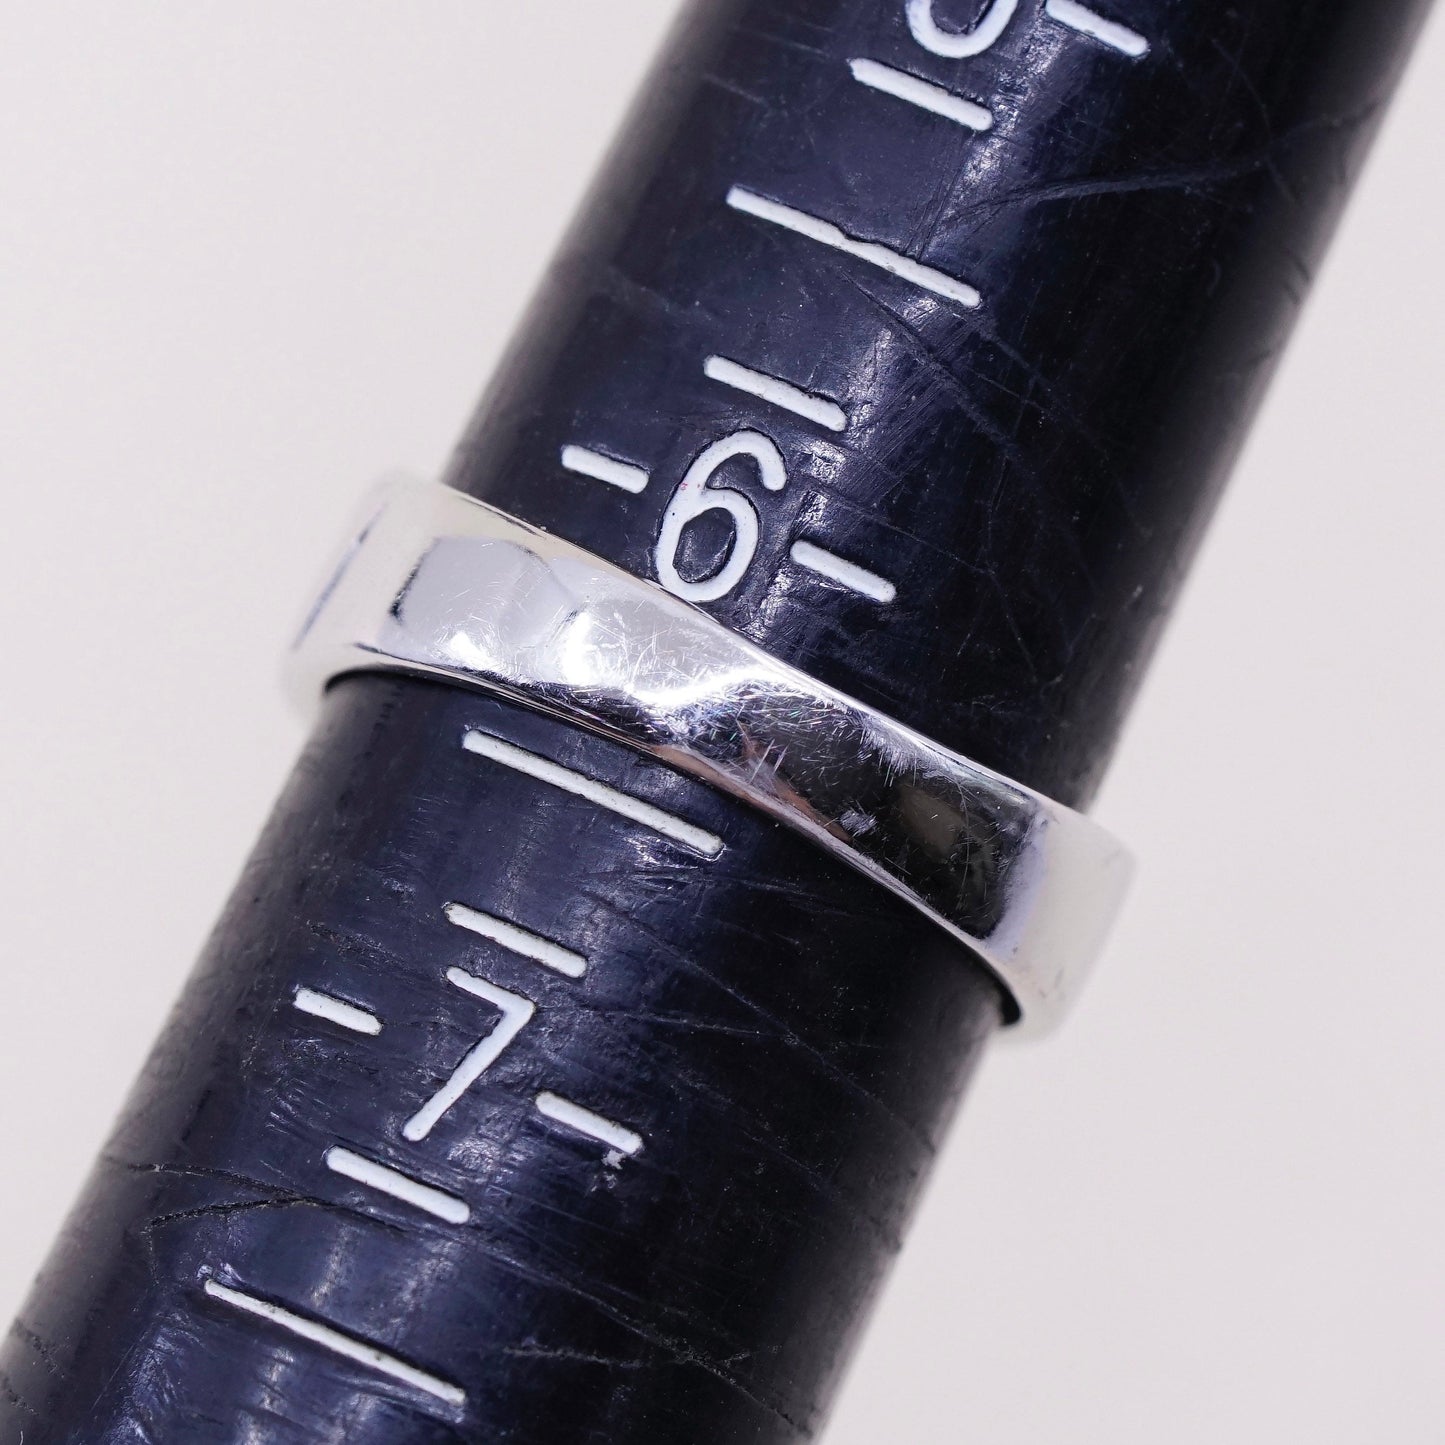 Size 6.25, Vintage sterling silver handmade ring, 925 belt band